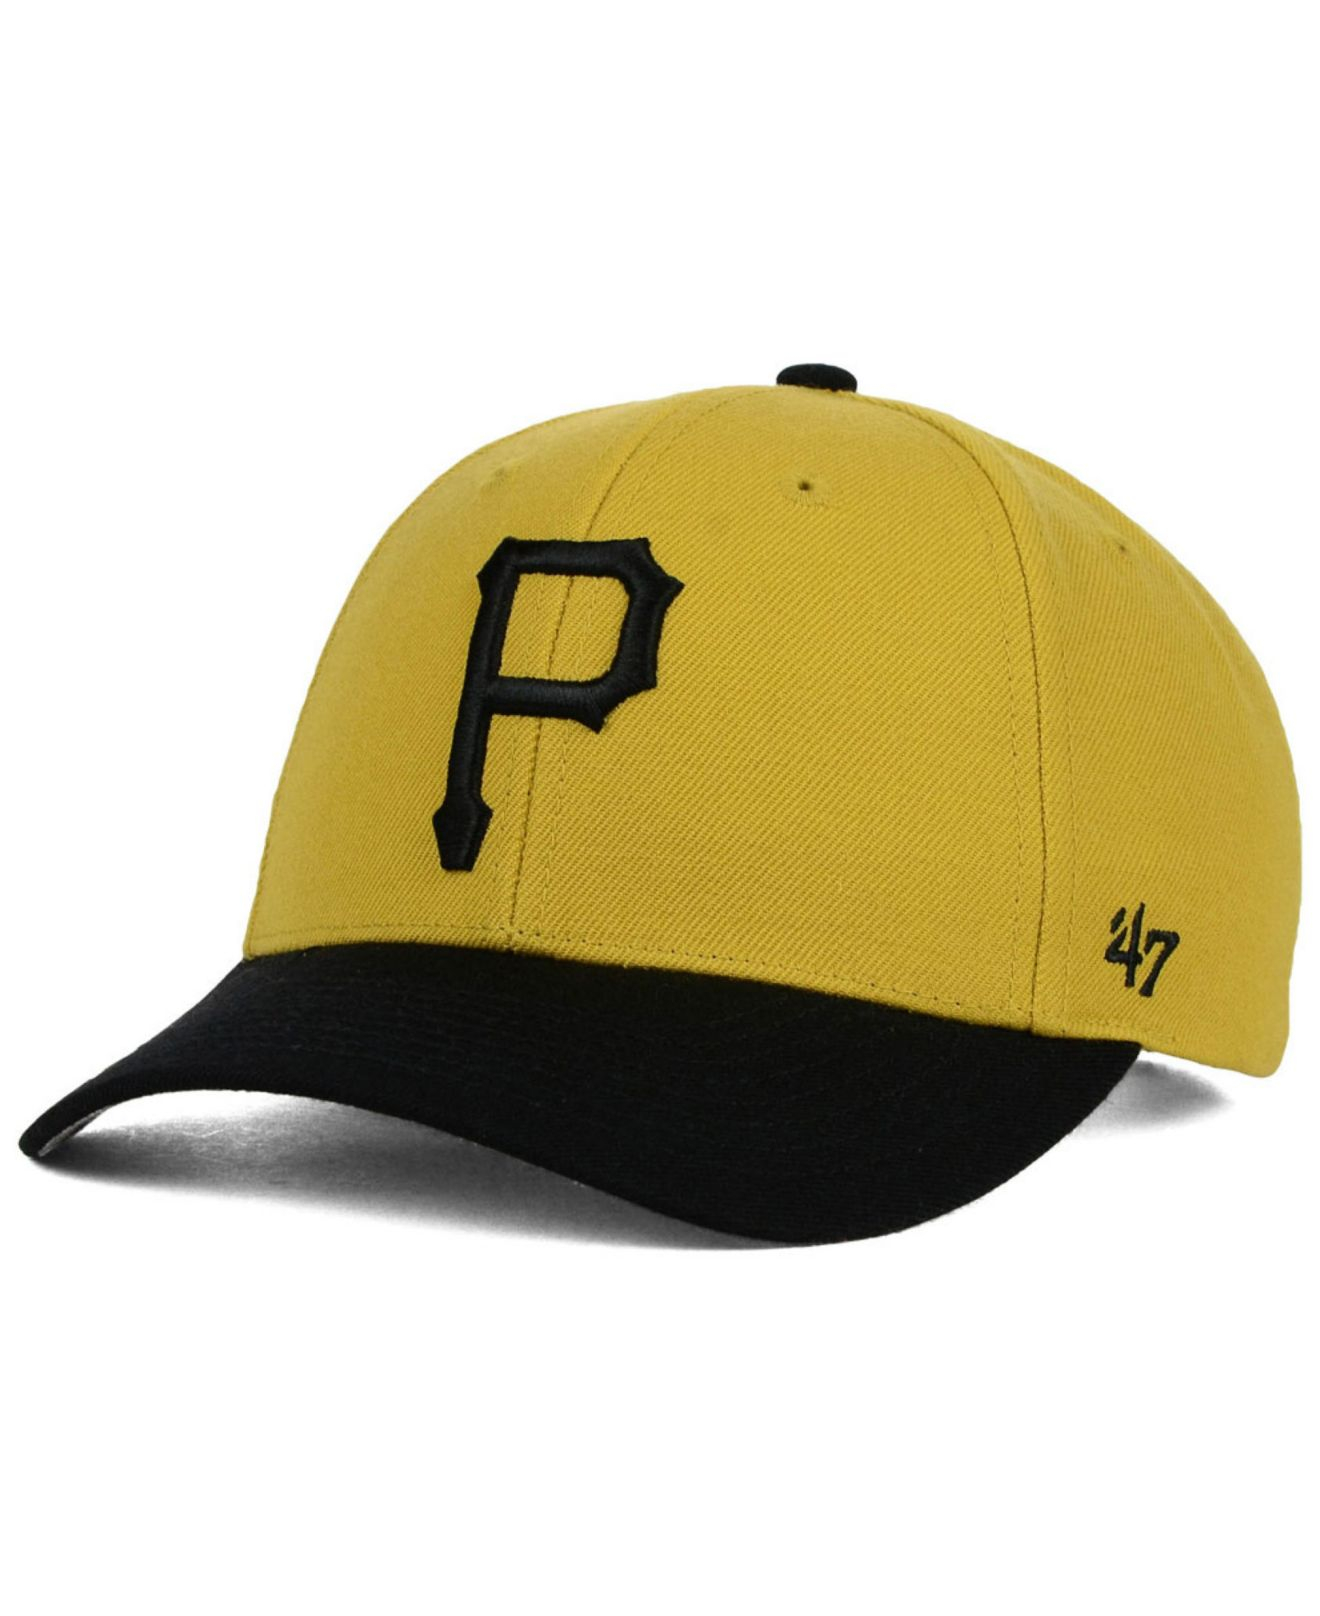  Pittsburgh Pirates MVP Adjustable Cap : Baseball Caps